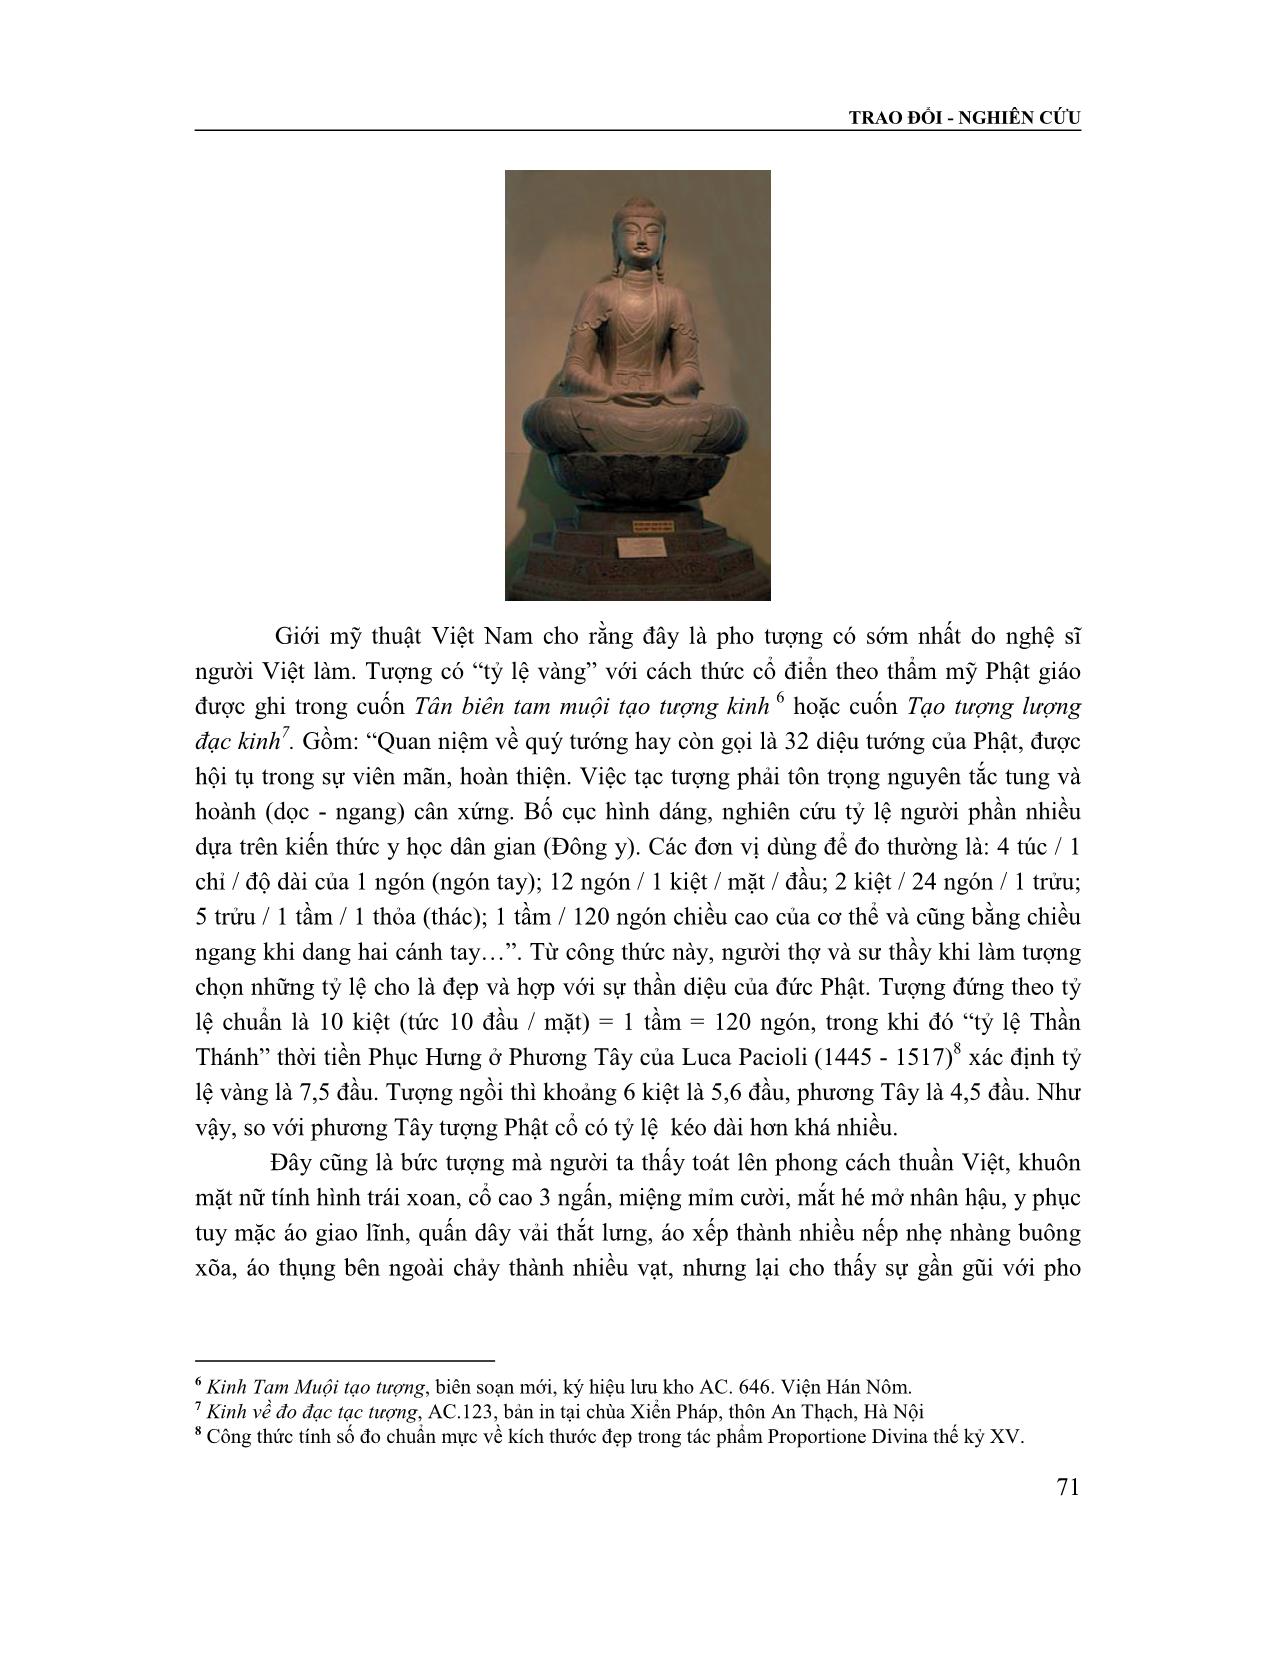 Nghiệm về vẻ đẹp trong tạo tác các pho tượng Phật điển hình ở Việt Nam trang 4